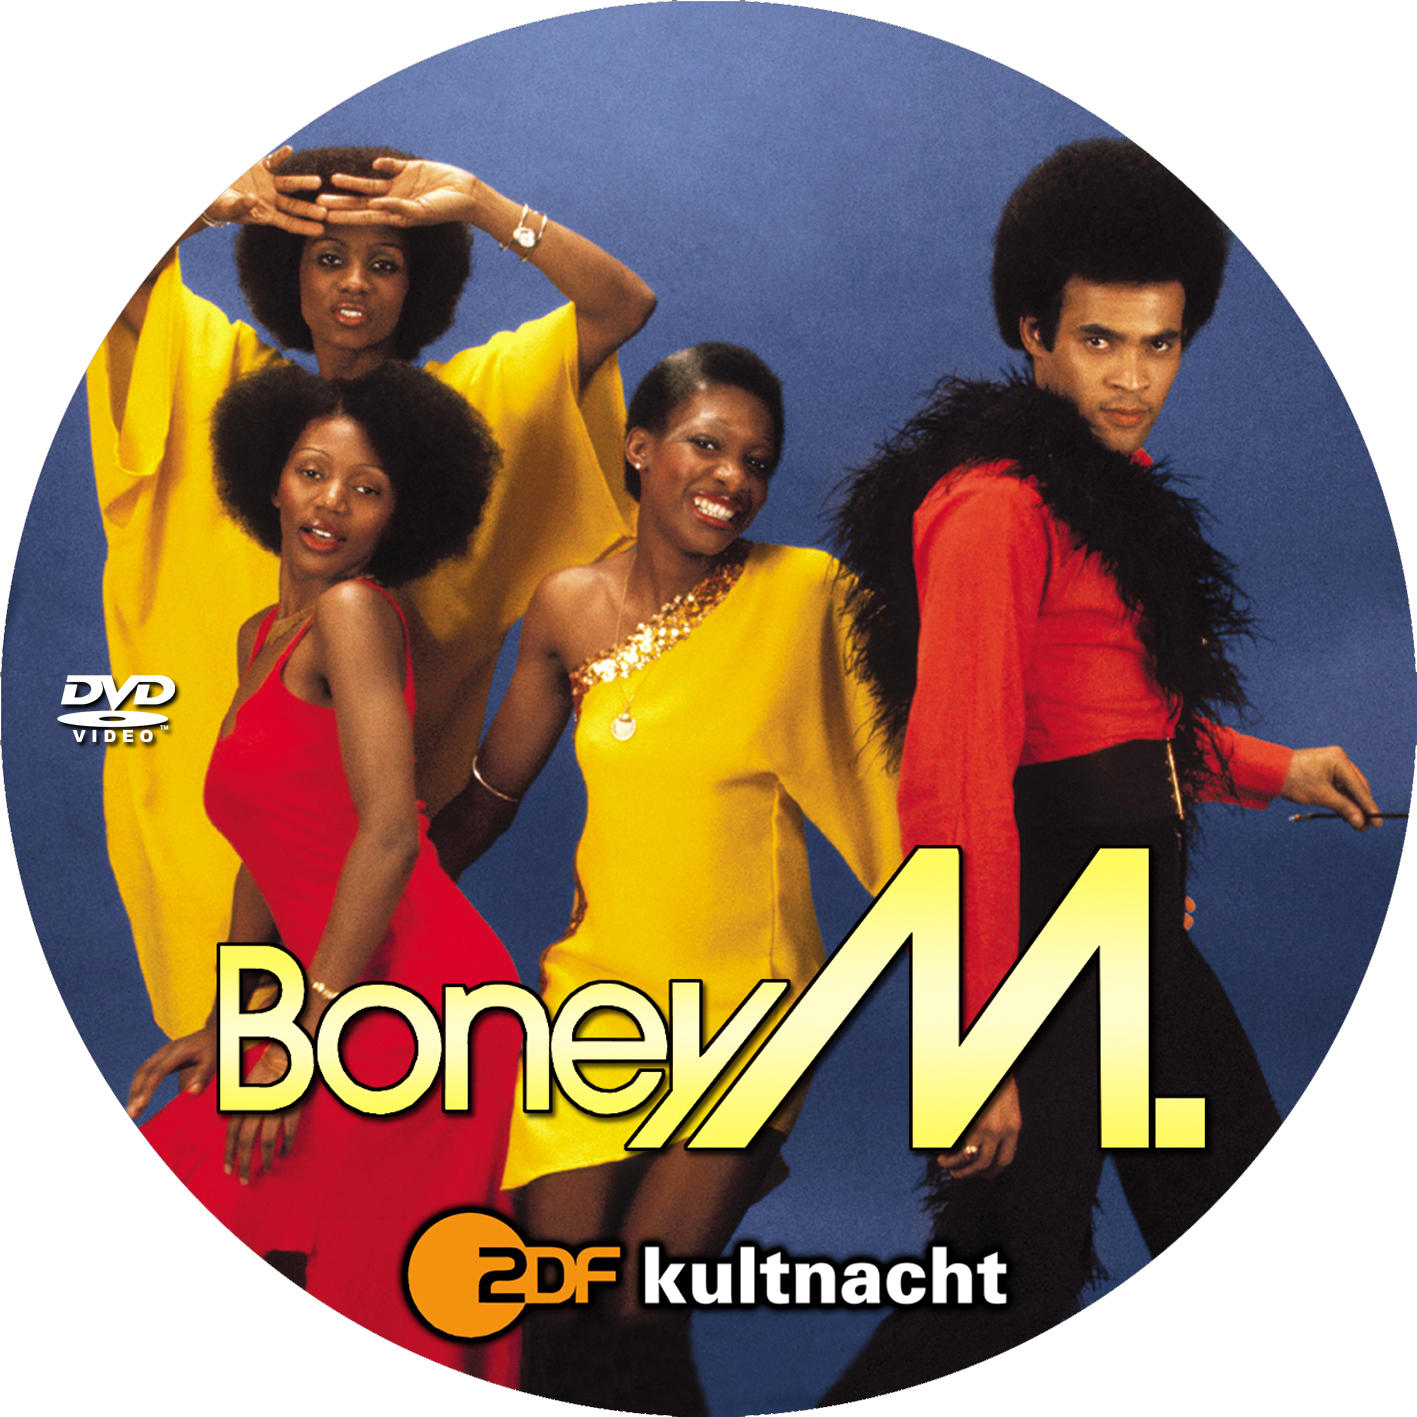 Boney m 320. Группа Boney m.. Группа Boney m. дискография. Группа Boney m. в 80. Группа Бони м 1975г.